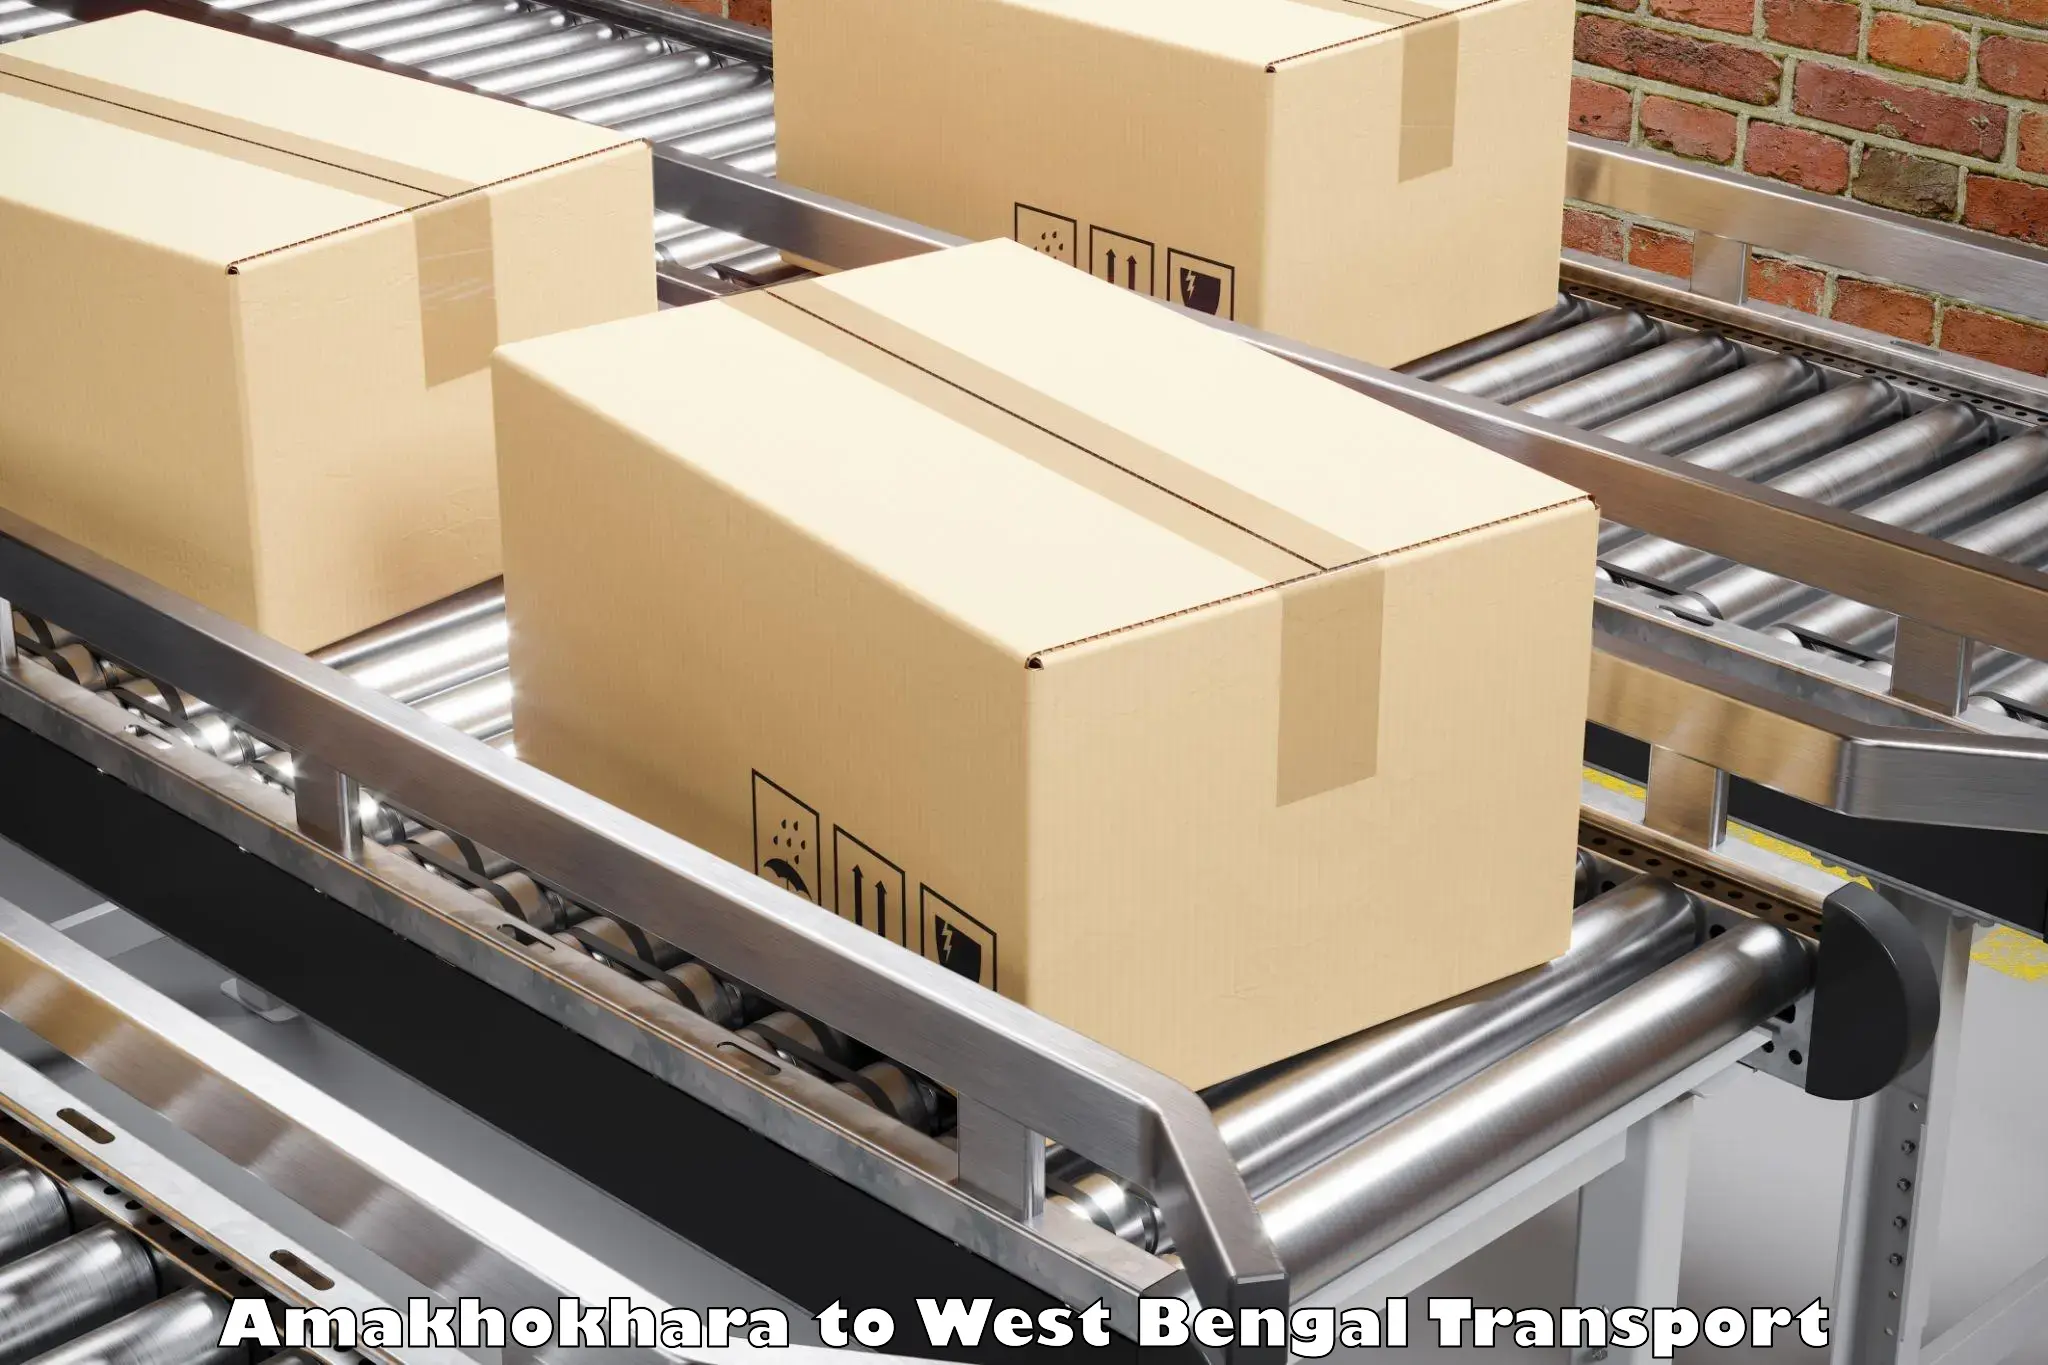 Cargo transportation services Amakhokhara to Maheshtala